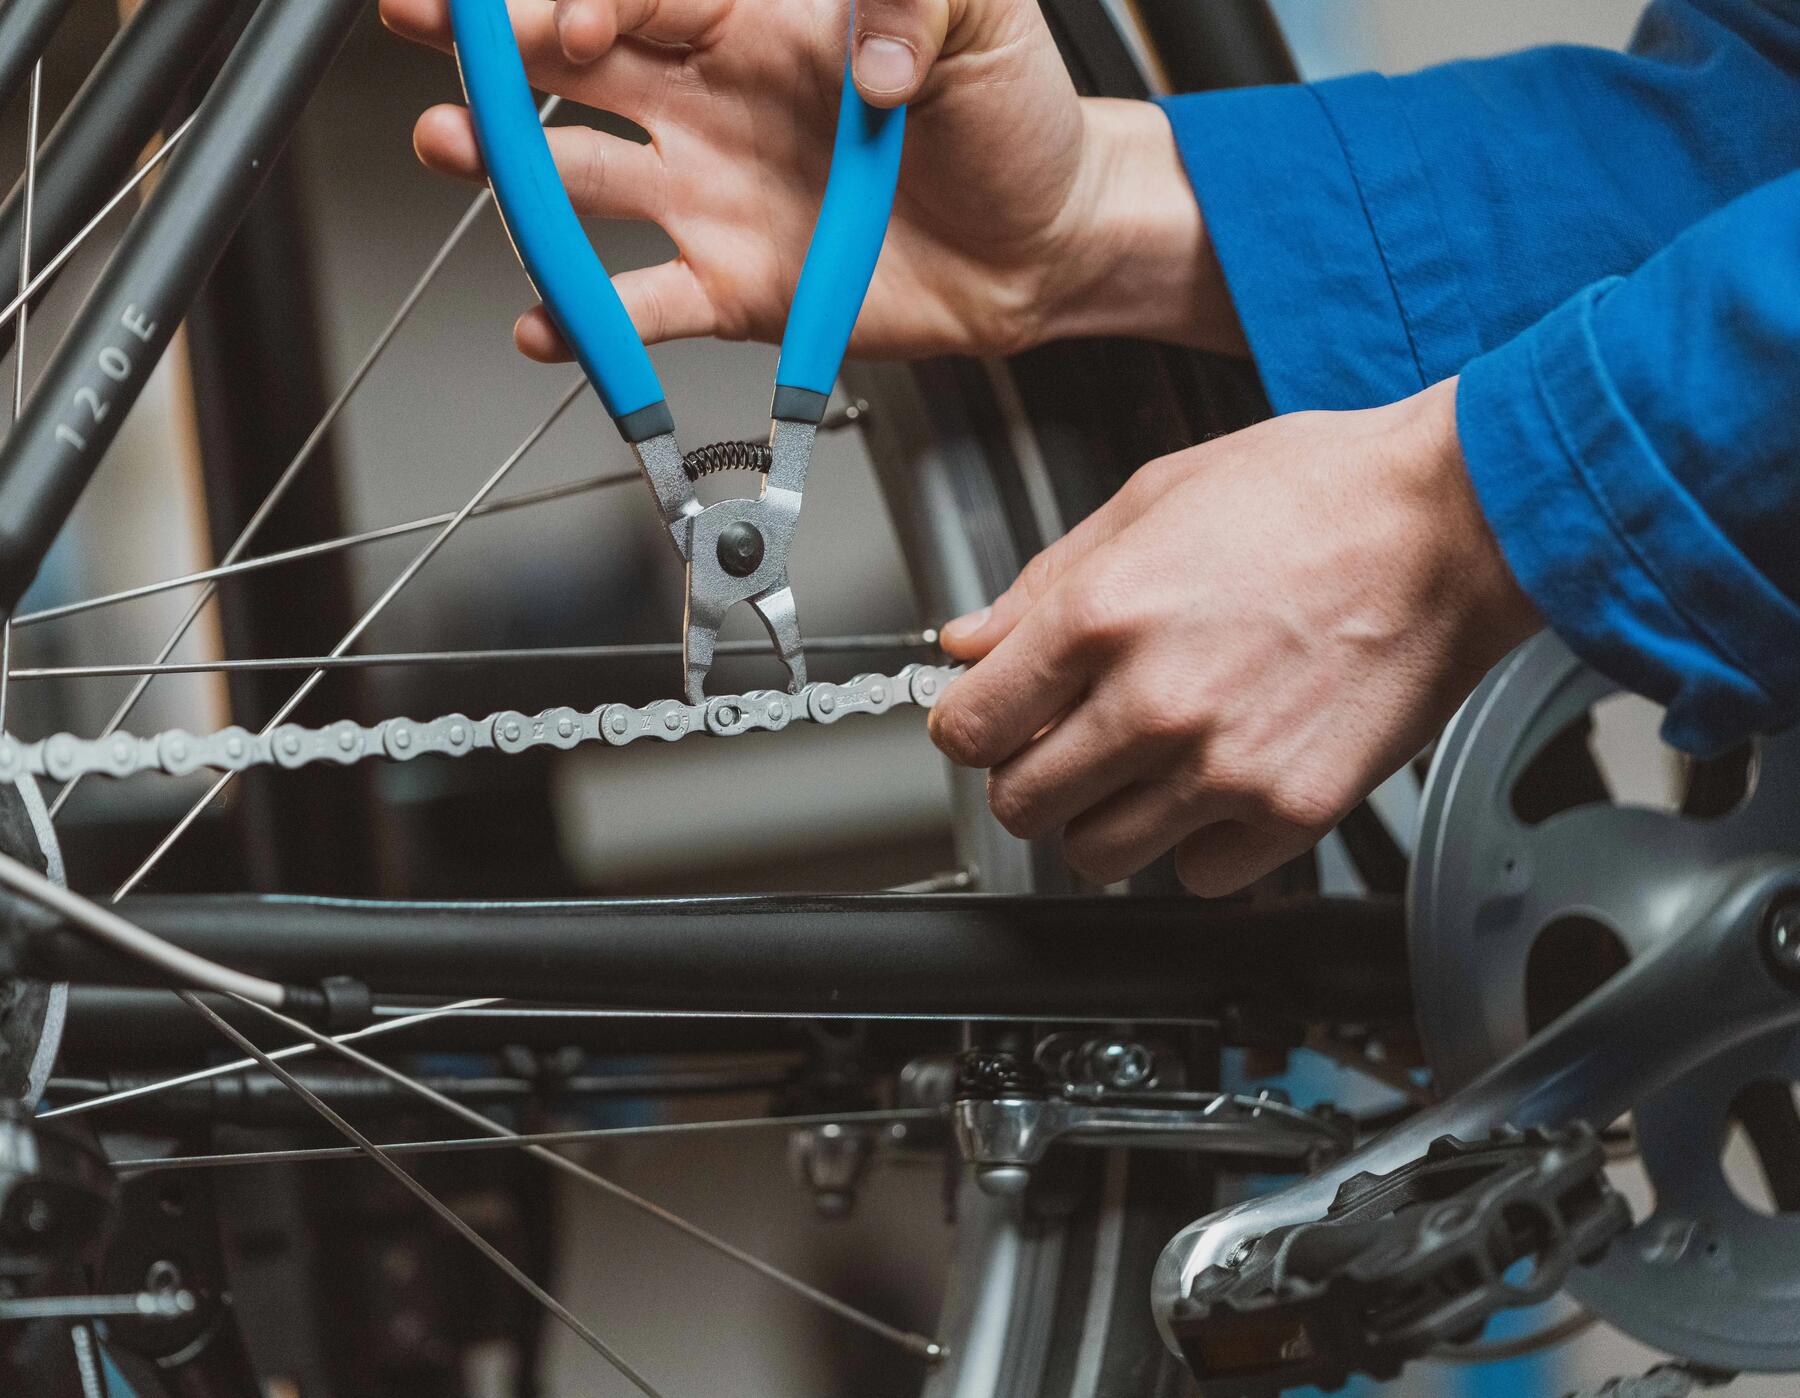 Nettoyer la transmission vélo : un guide pratique en 4 étapes